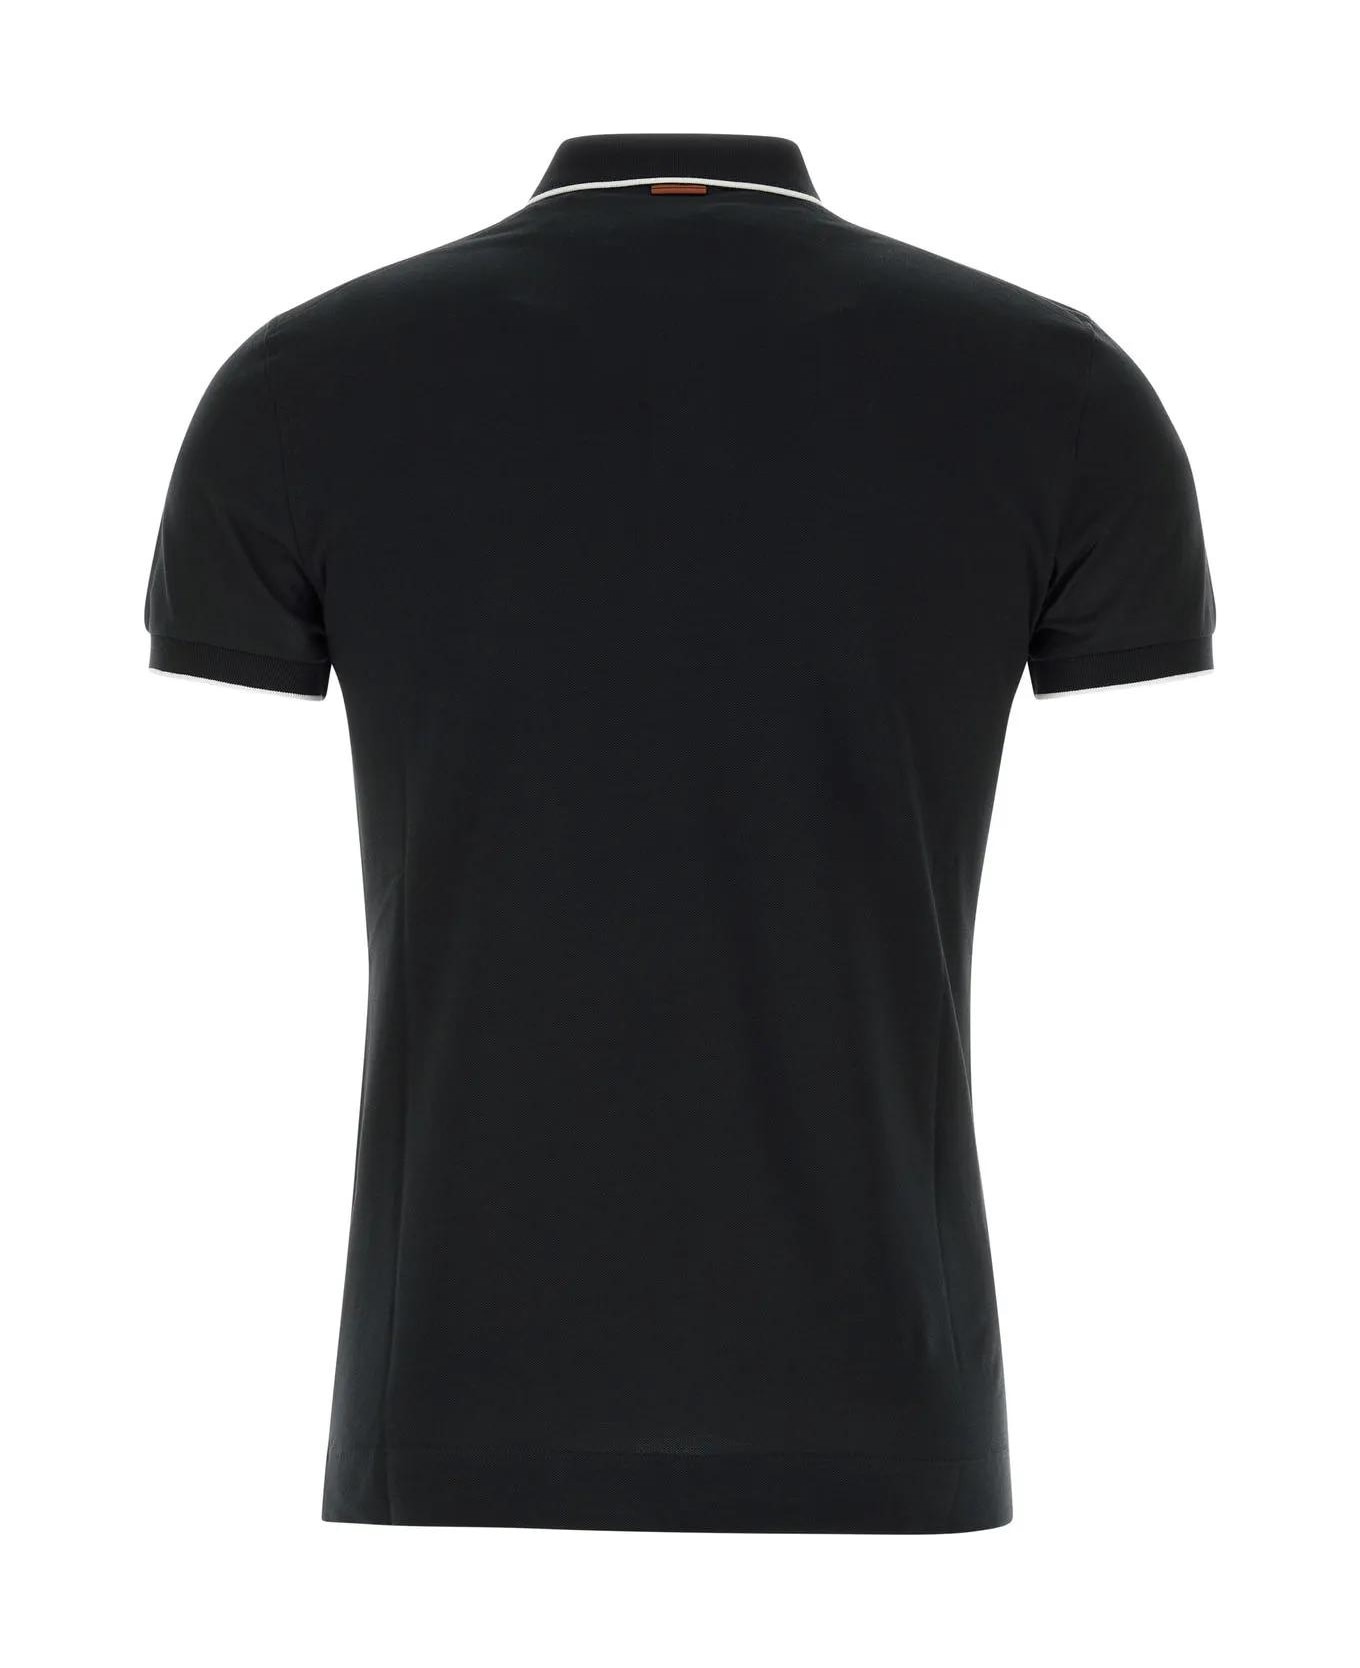 Zegna Black Stretch Piquet Polo Shirt - BLACK